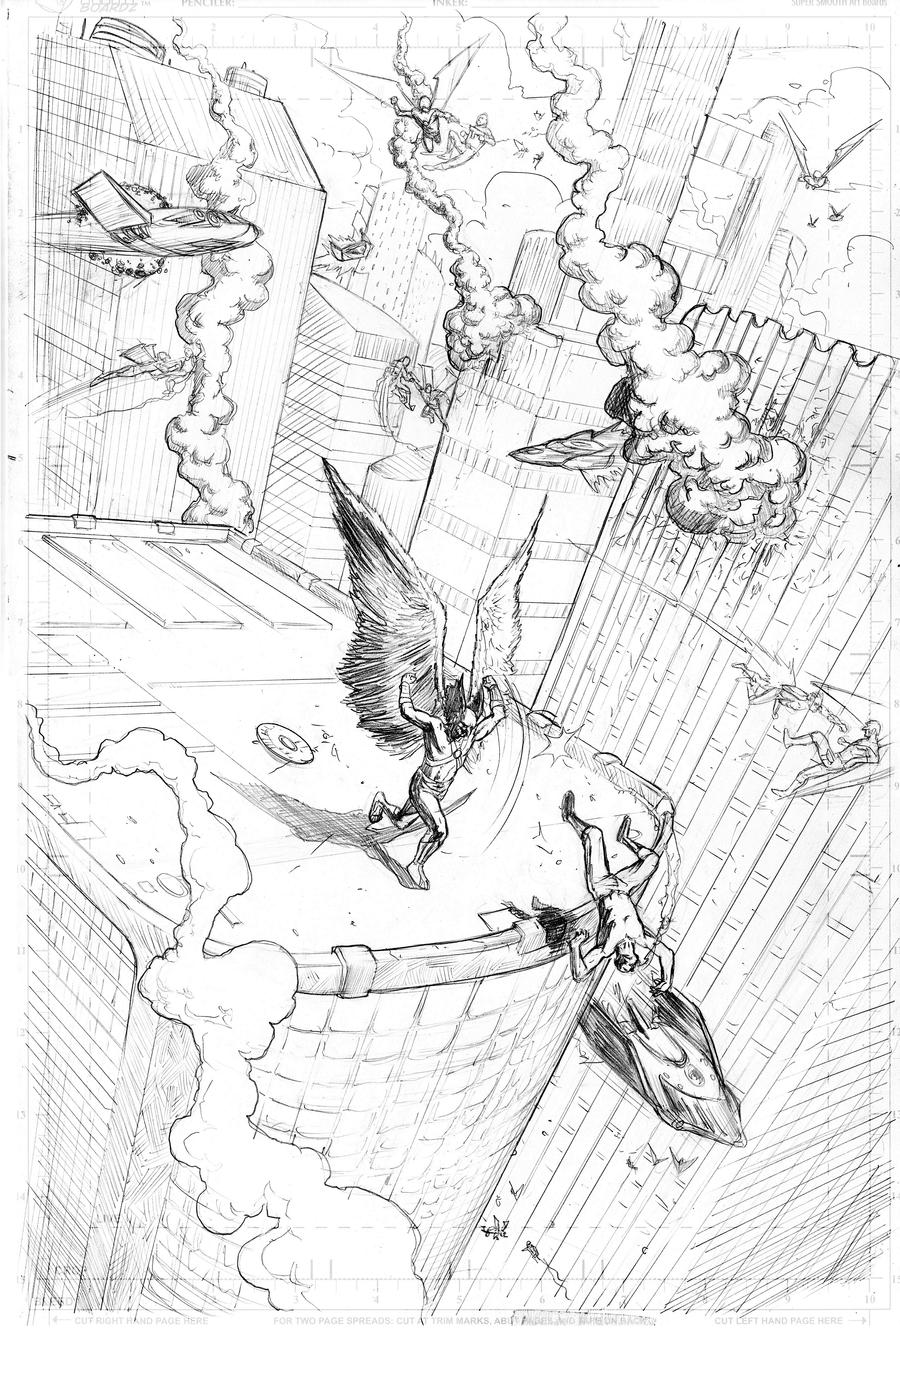 Hawkman Page 2 Pencils